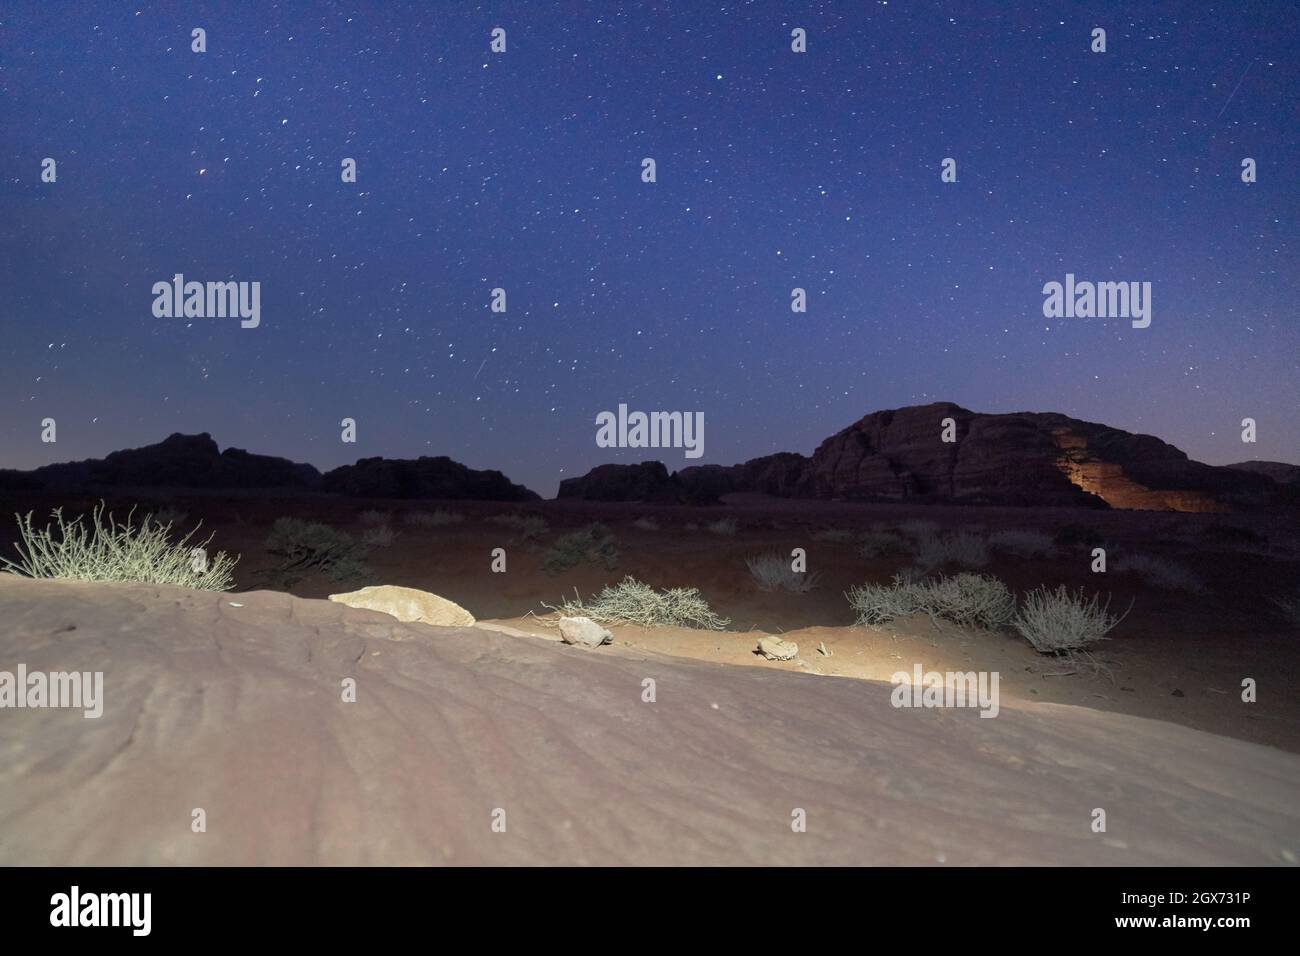 wadi rum desert at night Stock Photo